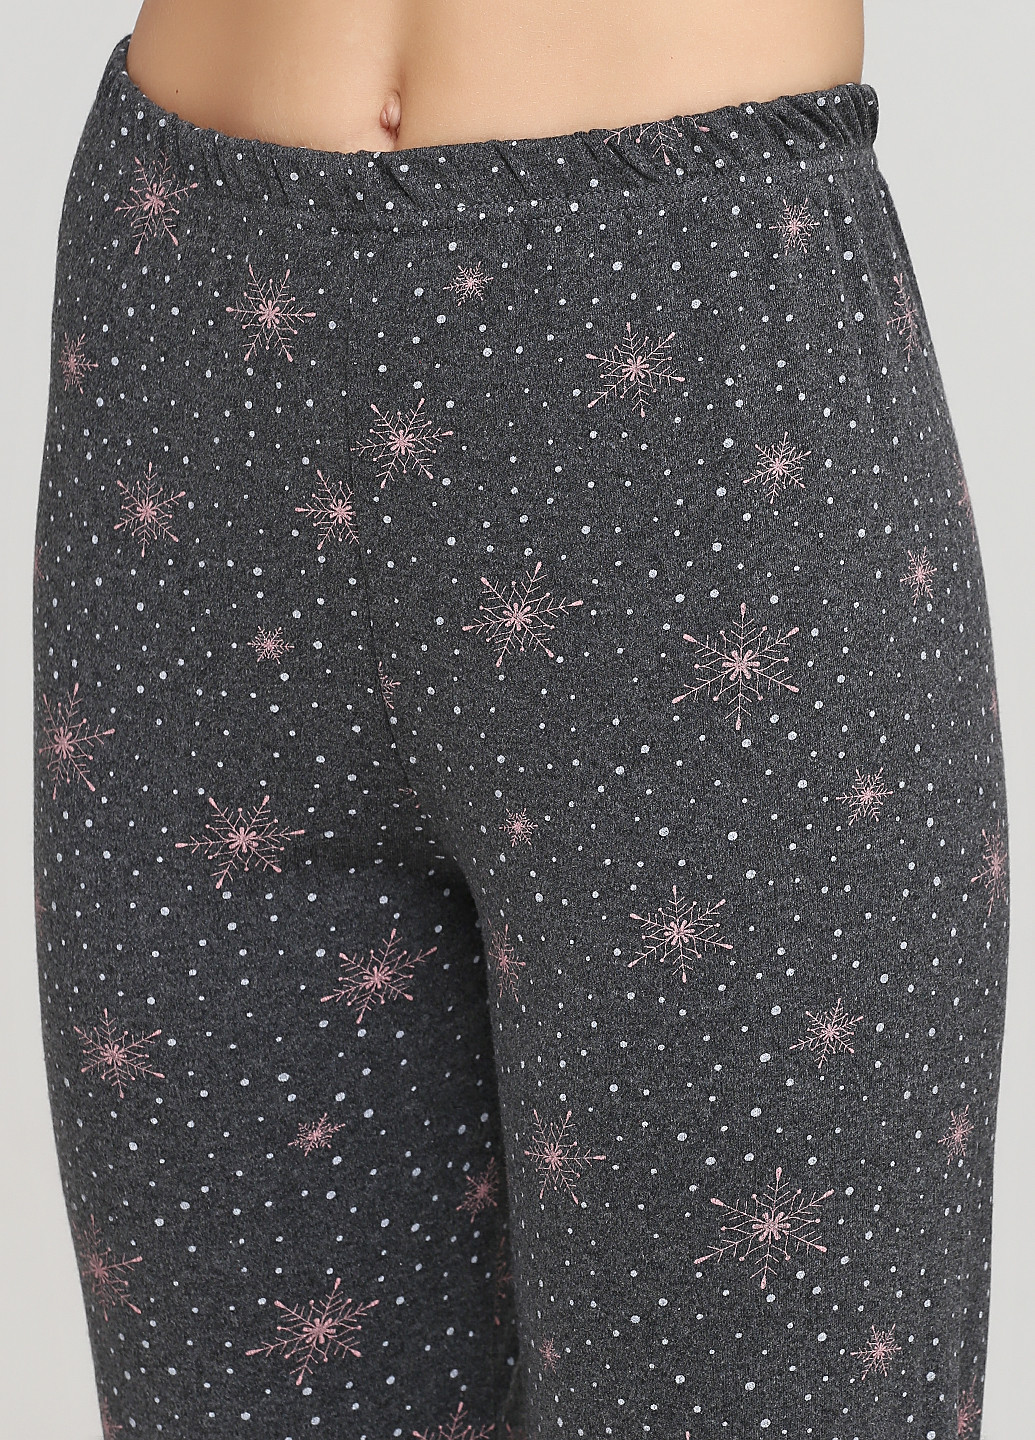 Комбинированная всесезон пижама (лонгслив, брюки) лонгслив + брюки Fawn